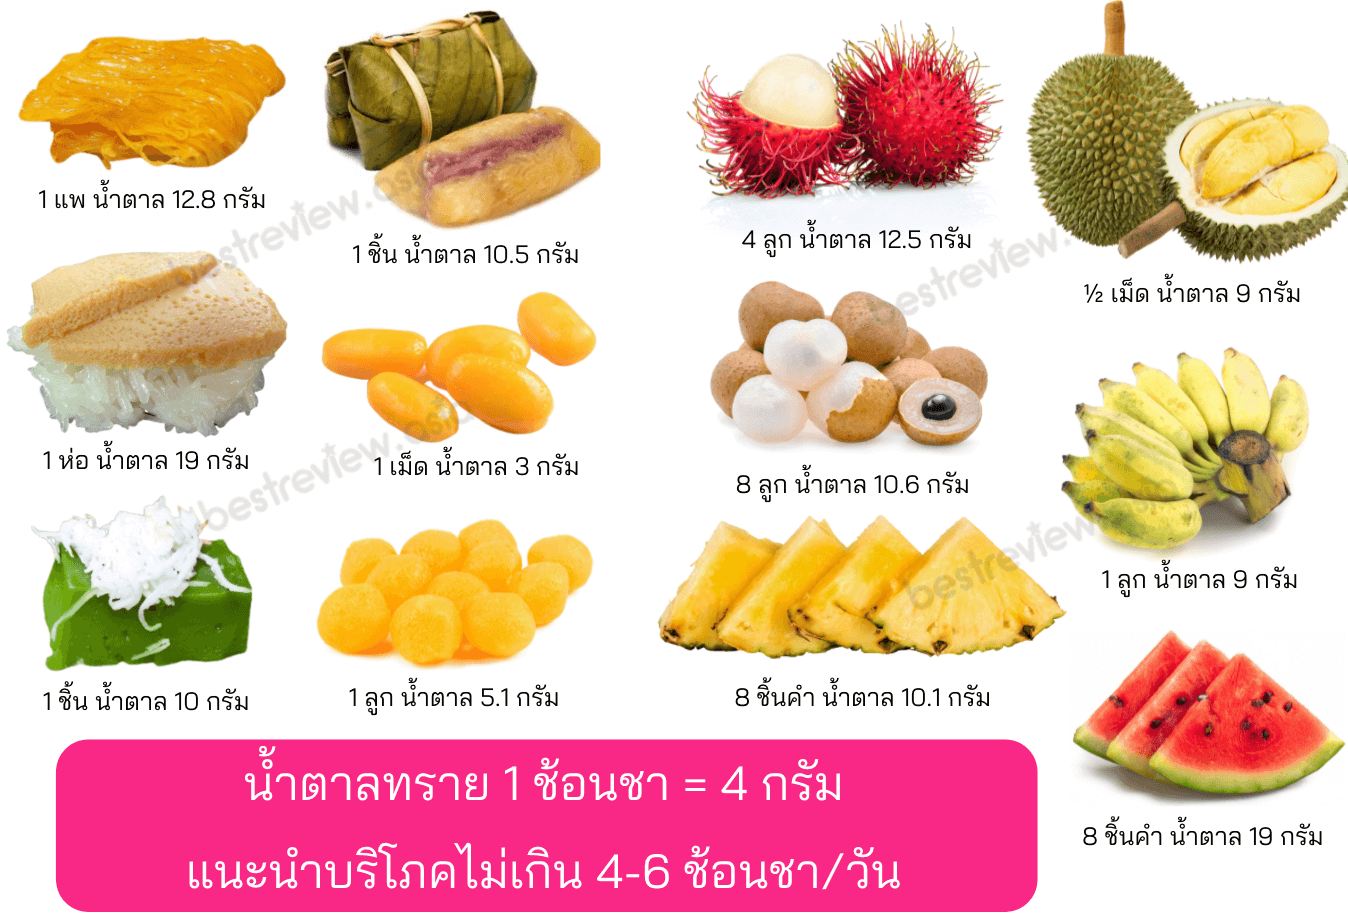 ปริมาณน้ำตาลในขนมไทยและผลไม้